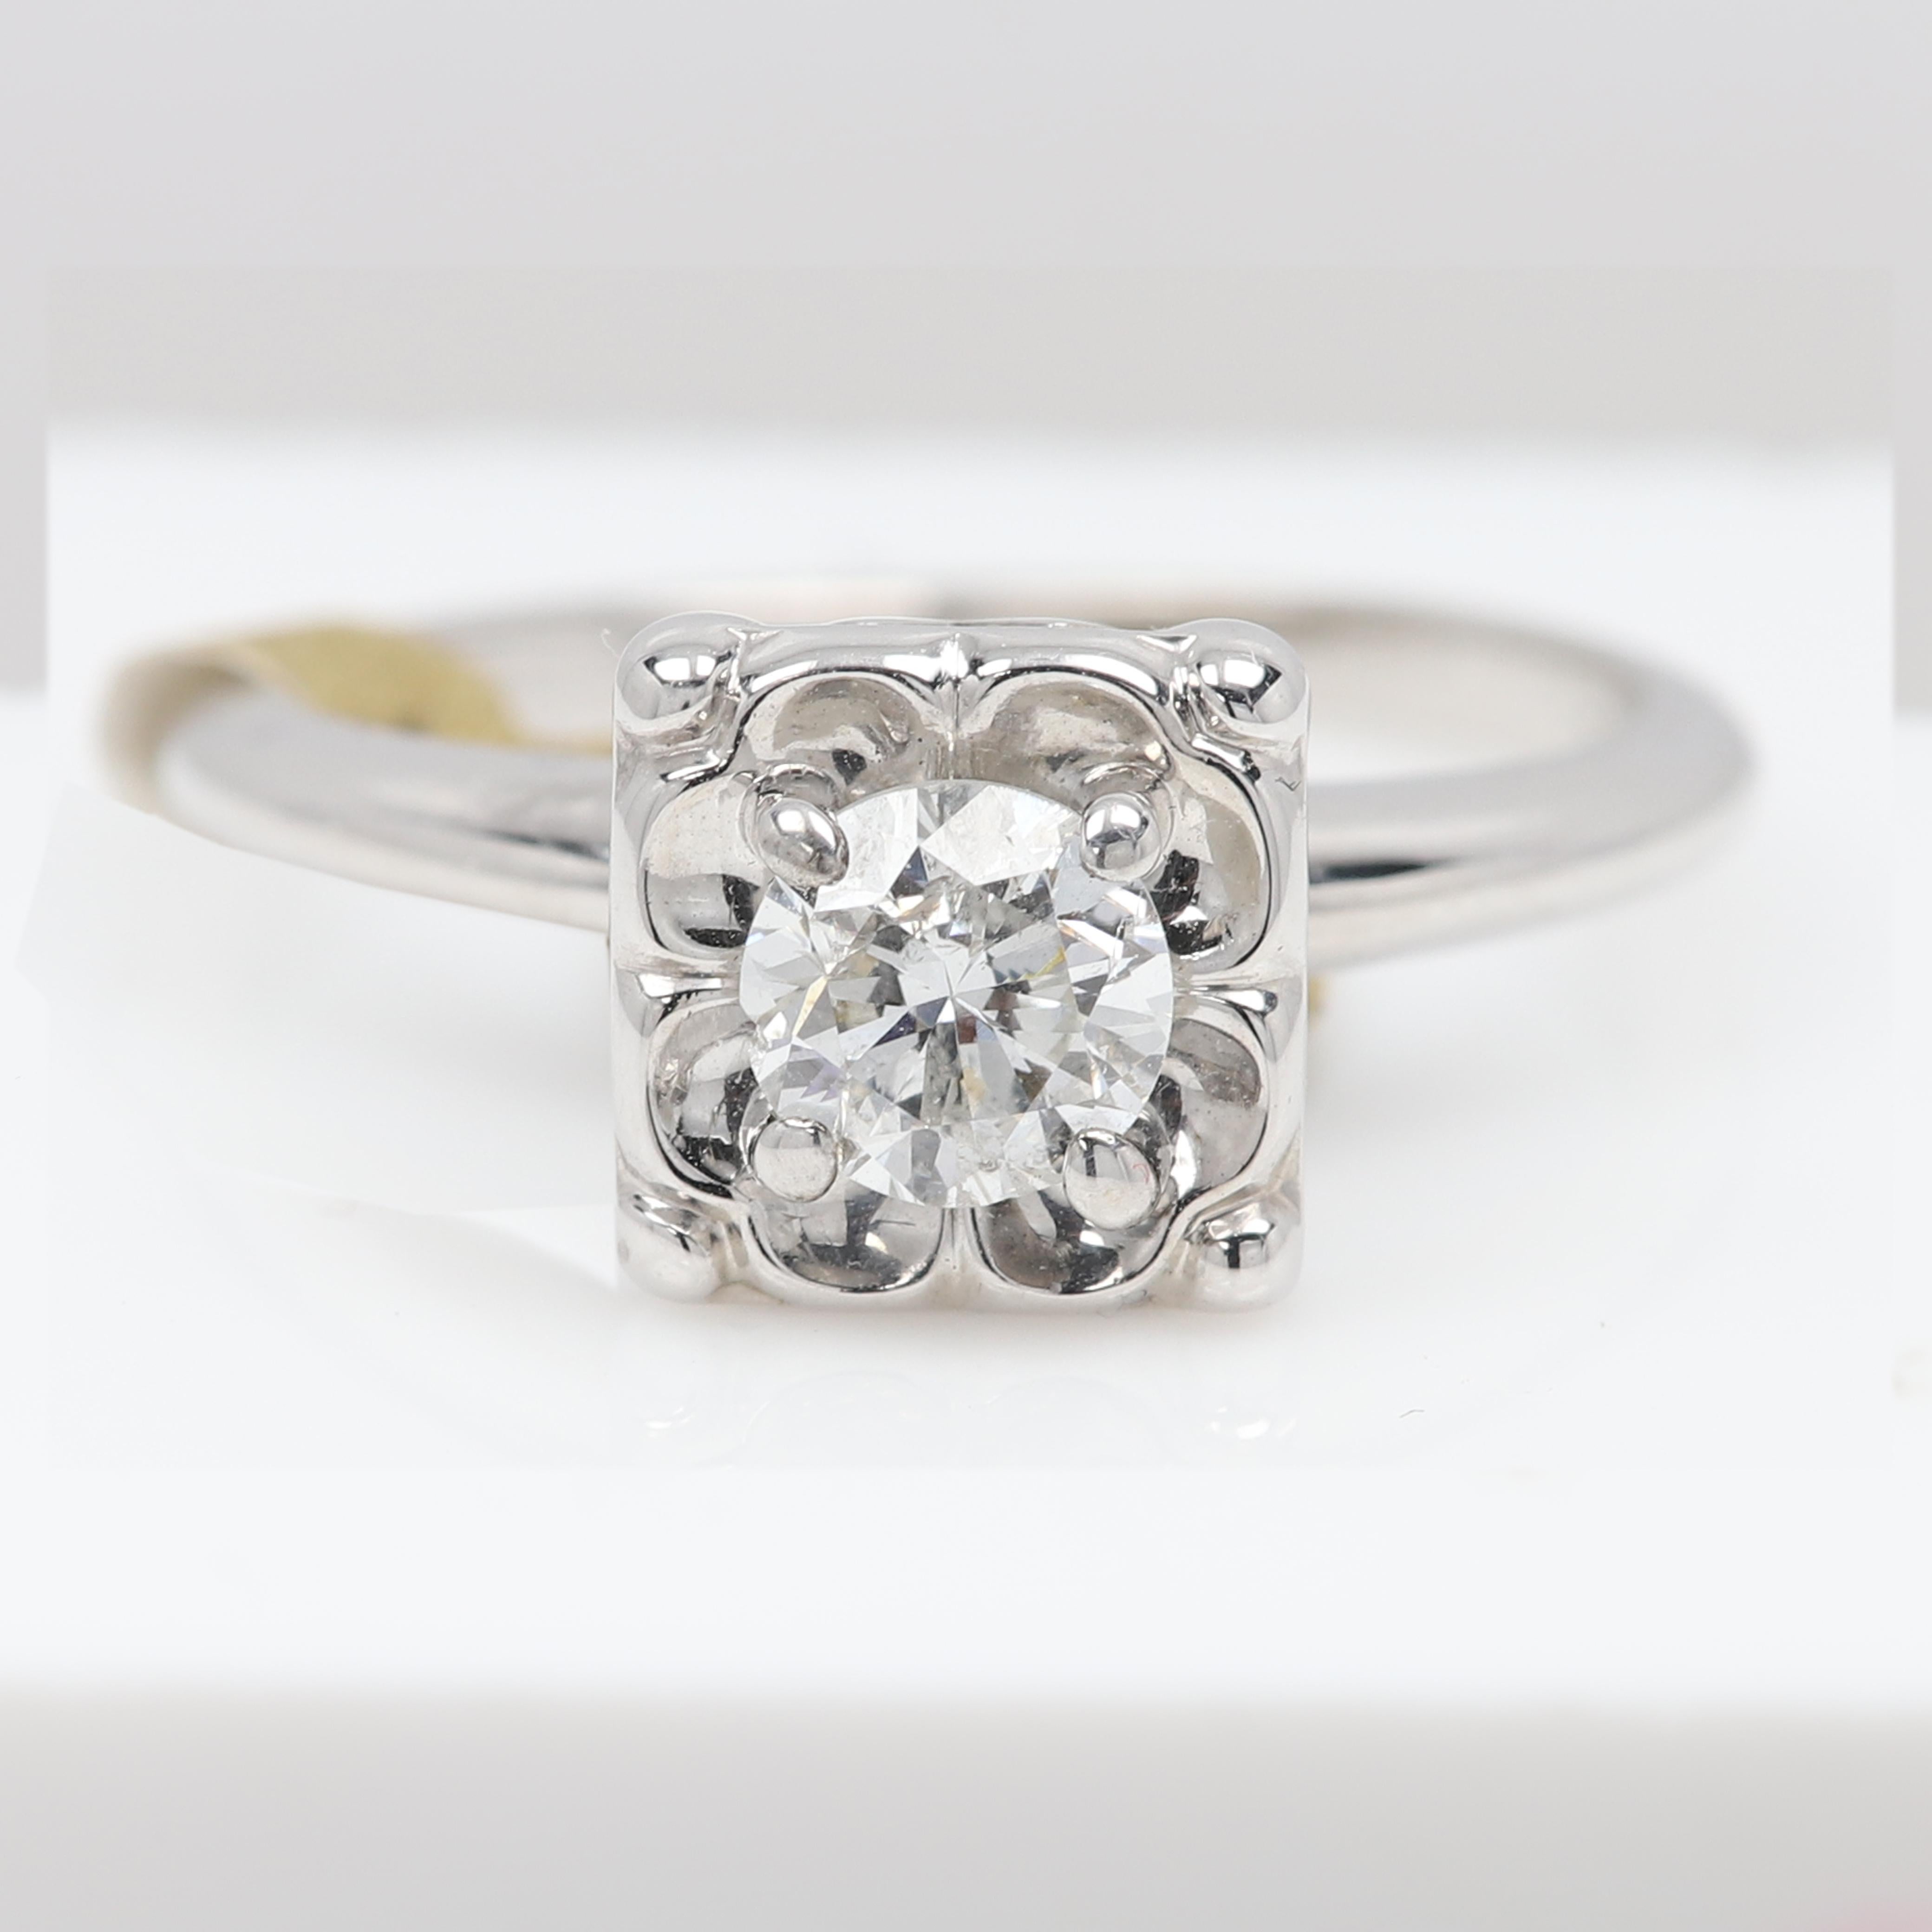 Bague vintage Art of Vintage à diamants ronds
Il est d'une beauté simple, pas trop criarde.
Le diamant est un diamant rond de 0,55 carat GH-SI1 de qualité moyenne. 
Taille de doigt 6
Or blanc 3,3 grammes.
La taille de la zone de conception est